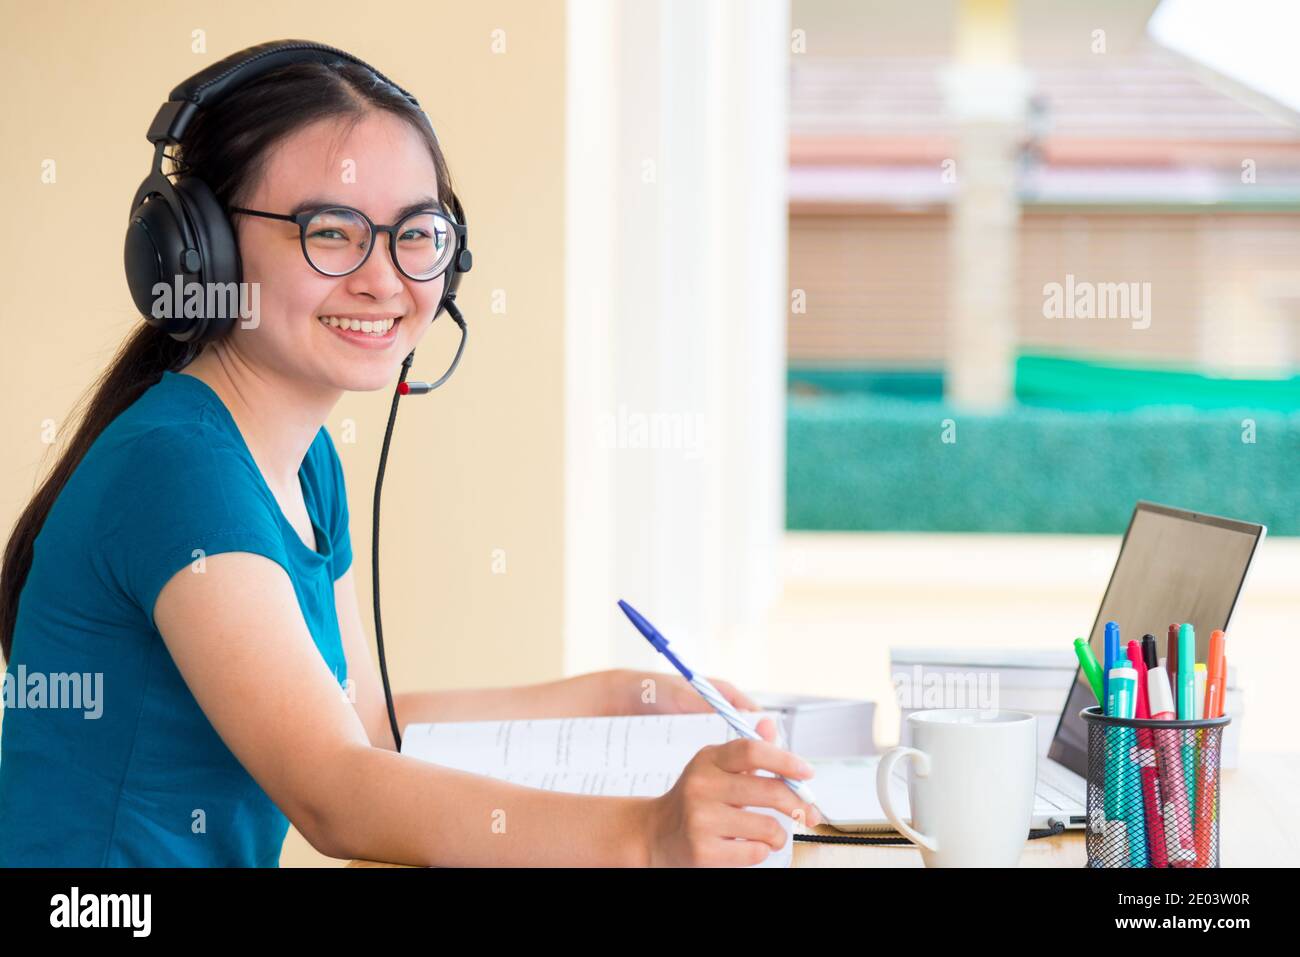 Jeune fille asiatique adolescente étudiante avec des lunettes de casque est à la recherche tout en utilisant un ordinateur portable étude en ligne à distance de l'école apprentissage de l'éducation f Banque D'Images